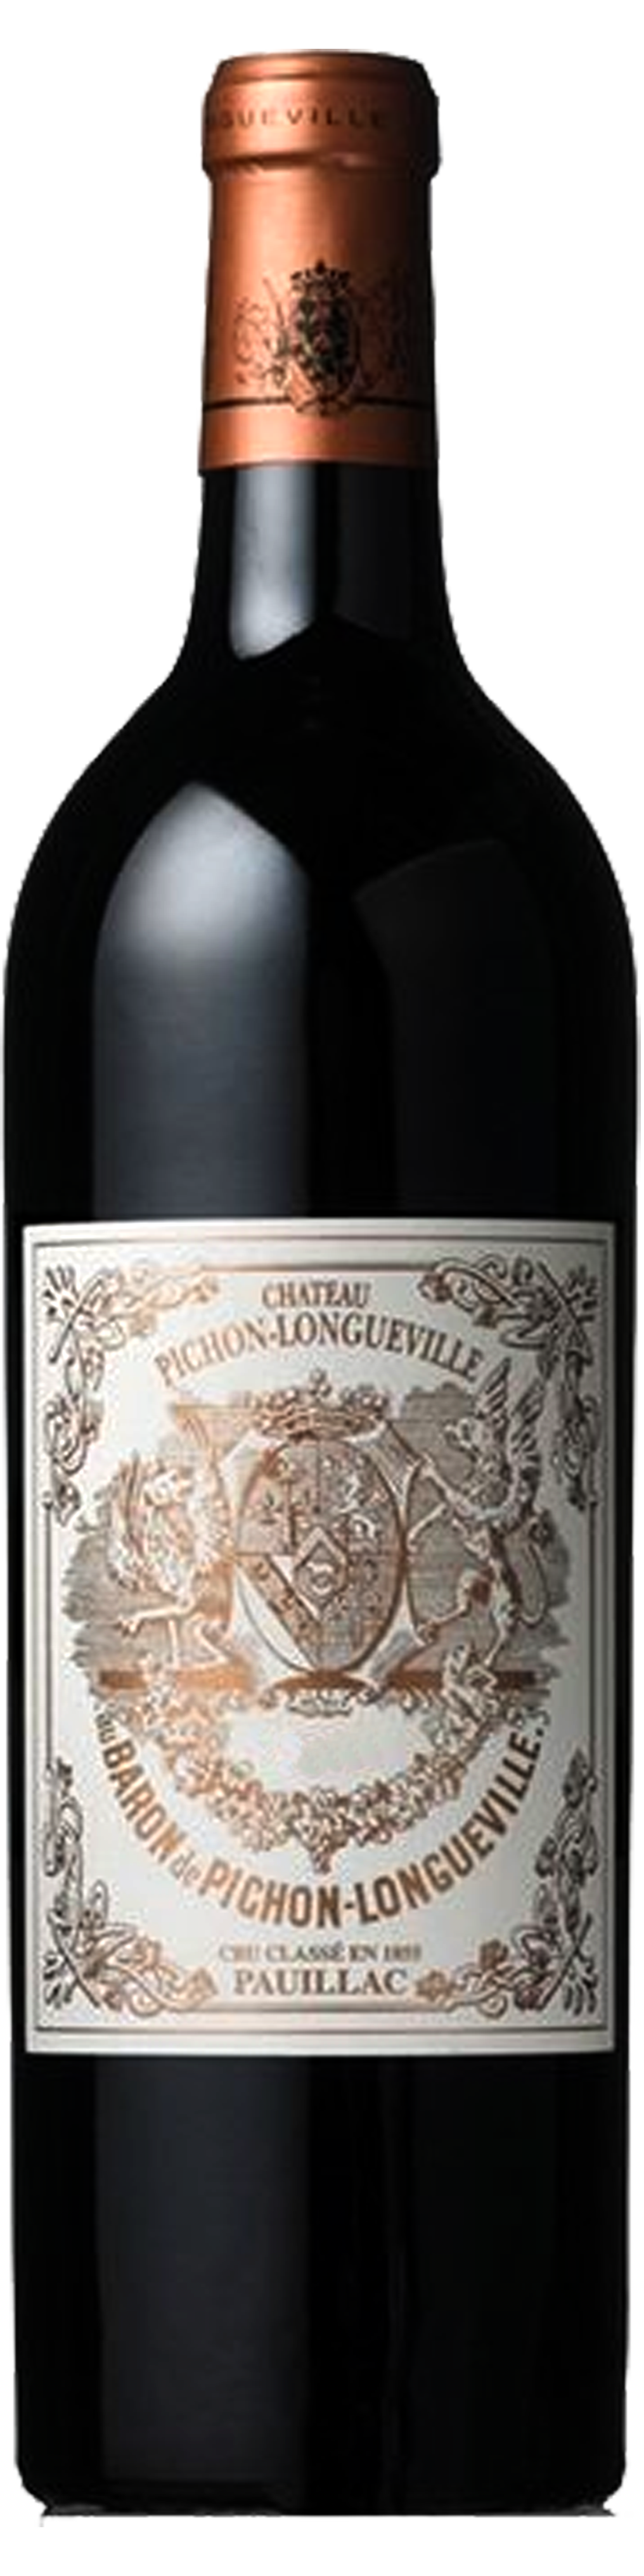 Bottle shot of 2003 Pichon Longueville Baron, 2ème Cru Pauillac